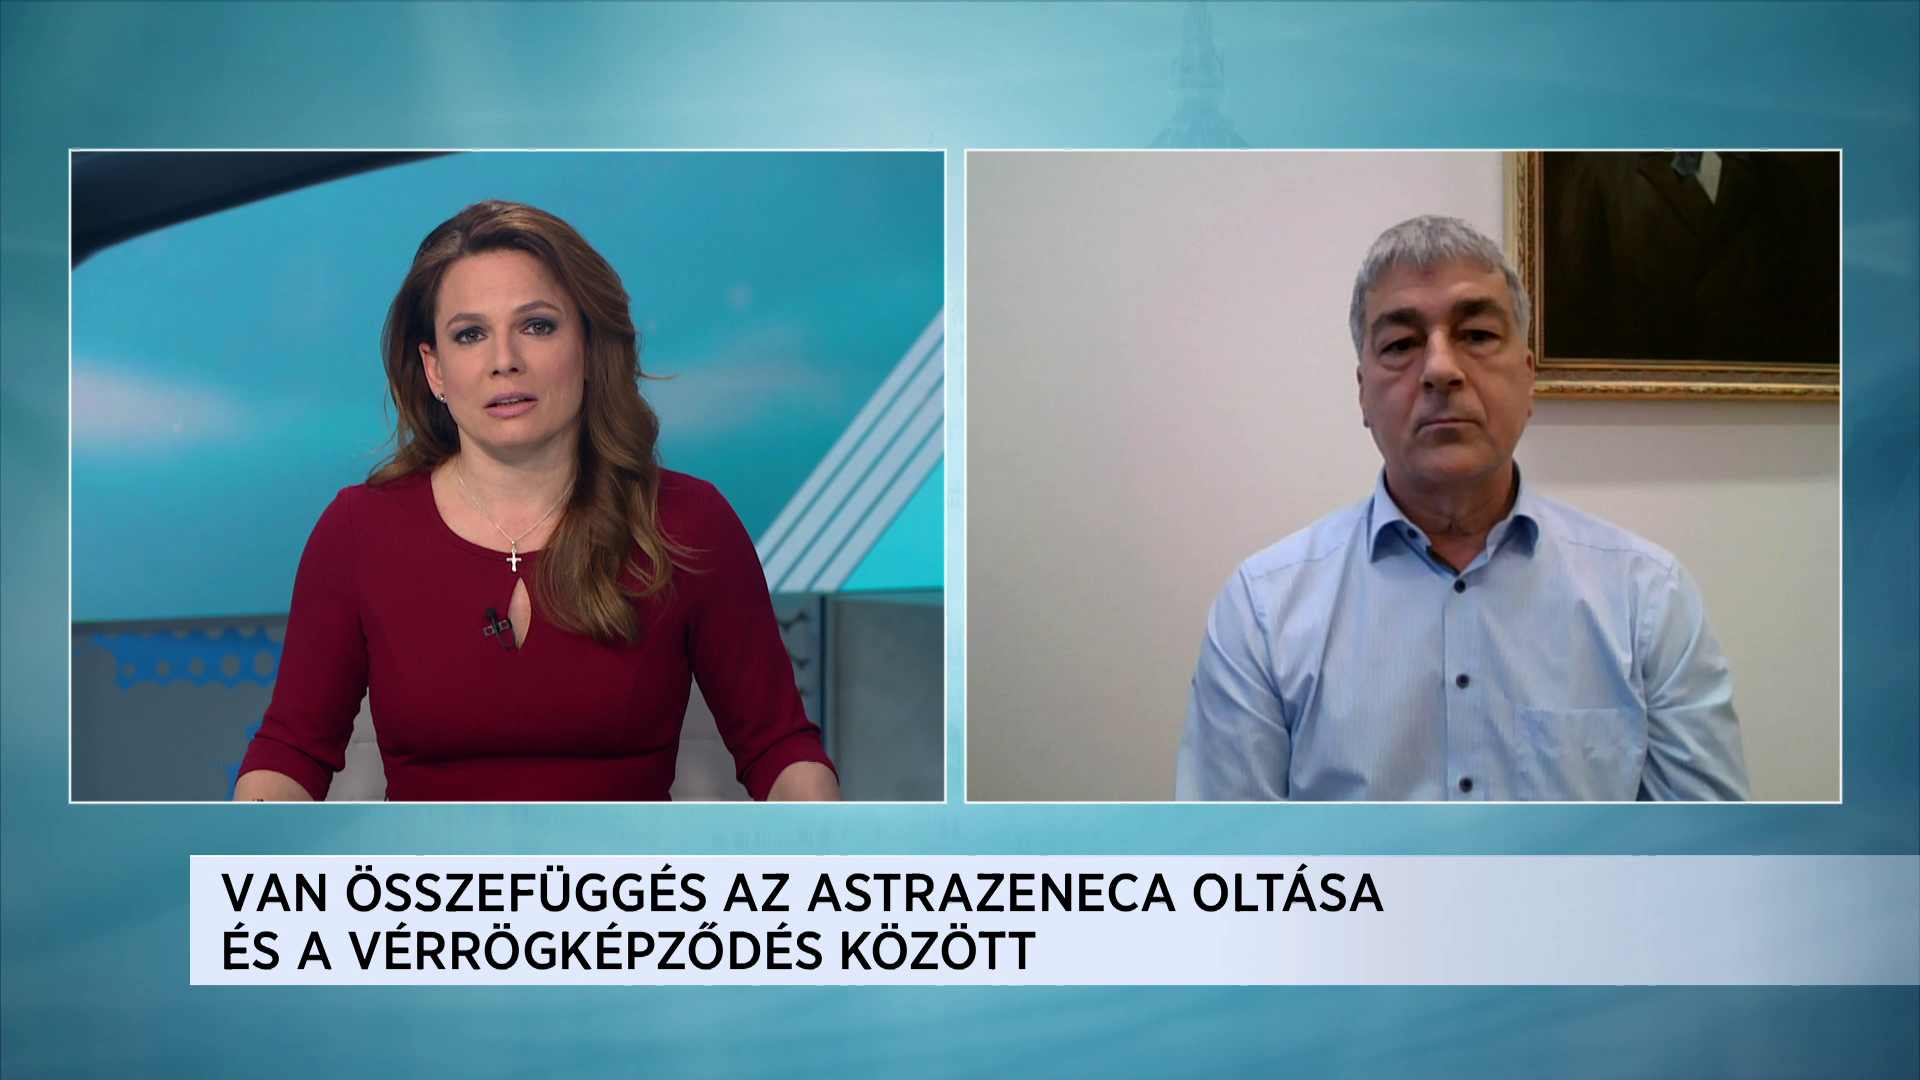 Kacskovics Imre: Az EMA nem mondja, hogy az AstraZeneca összefüggésbe hozható a vérrögképződéssel